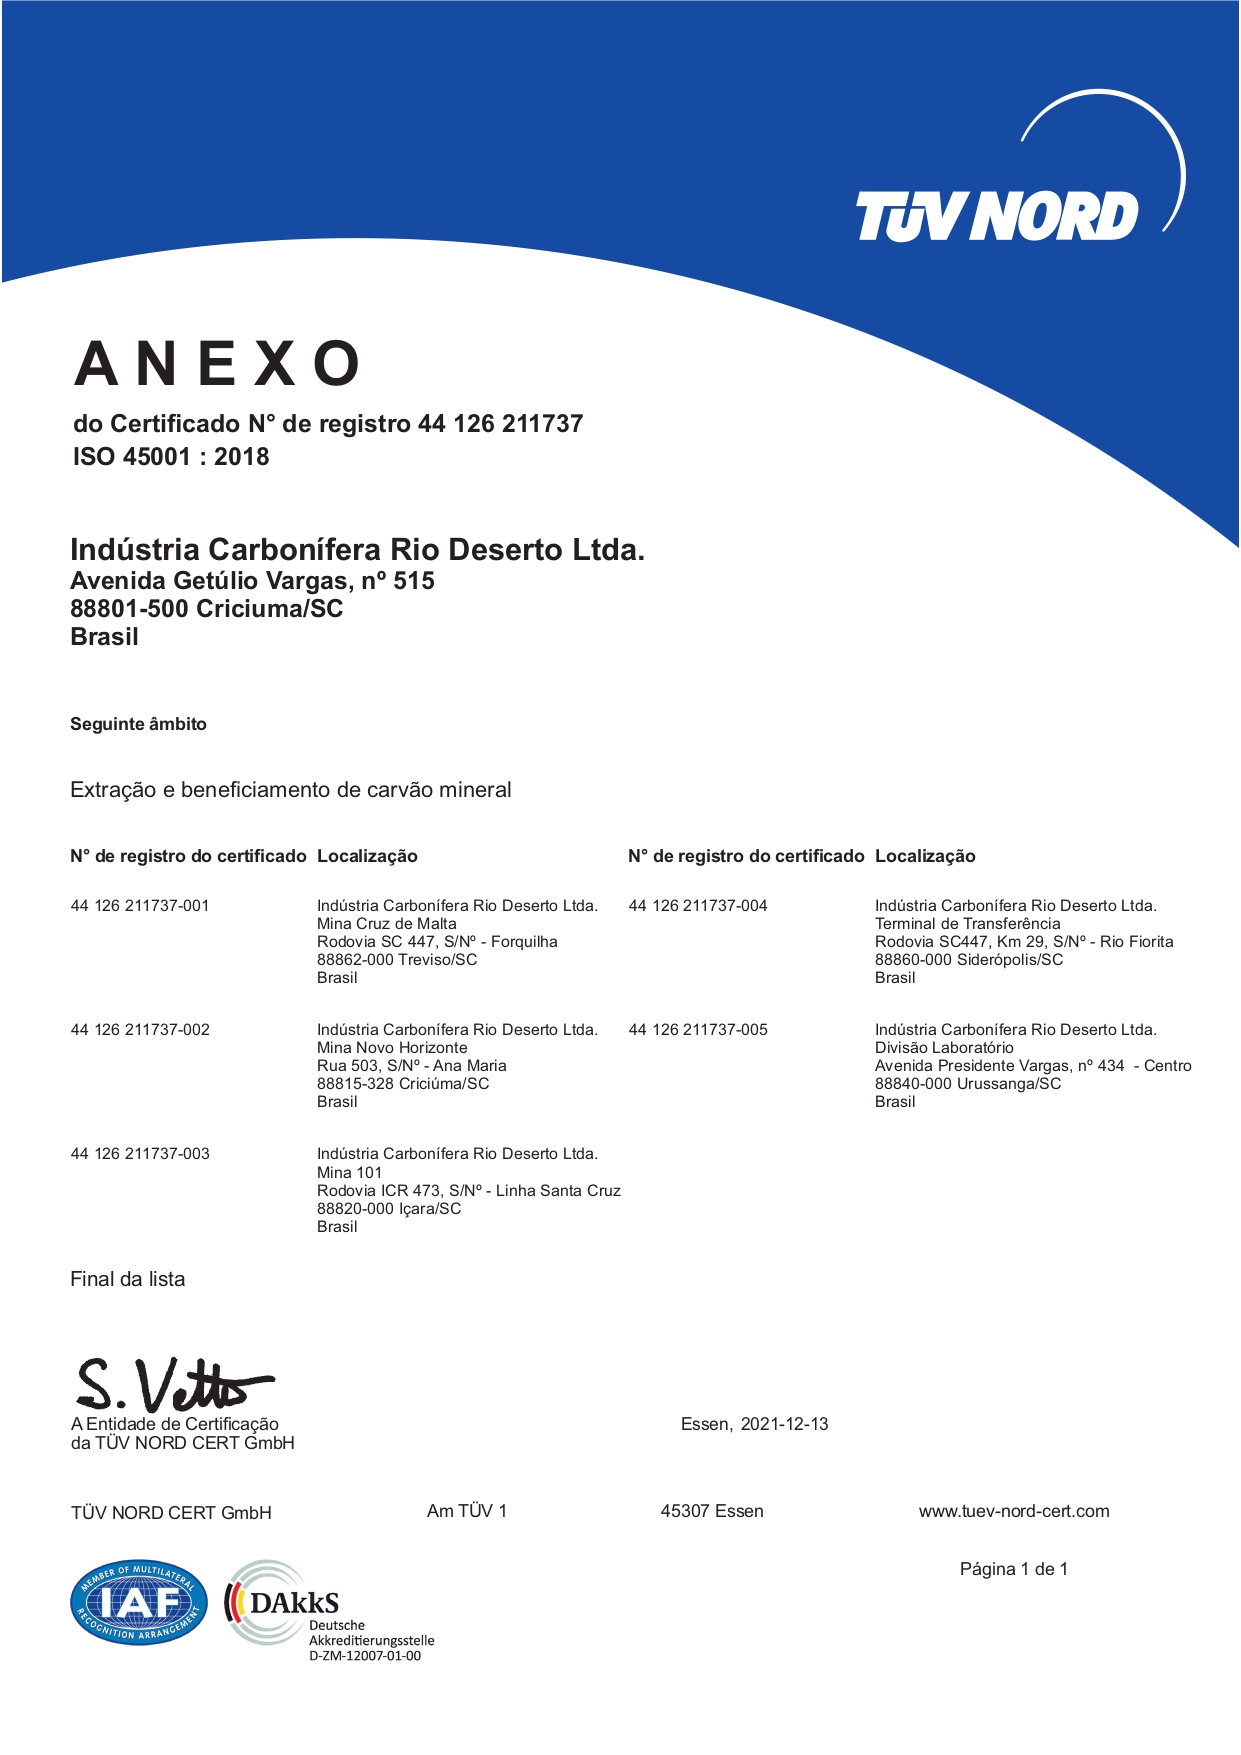 Sistema de gestão certificado na NBR ISO 45001:2018